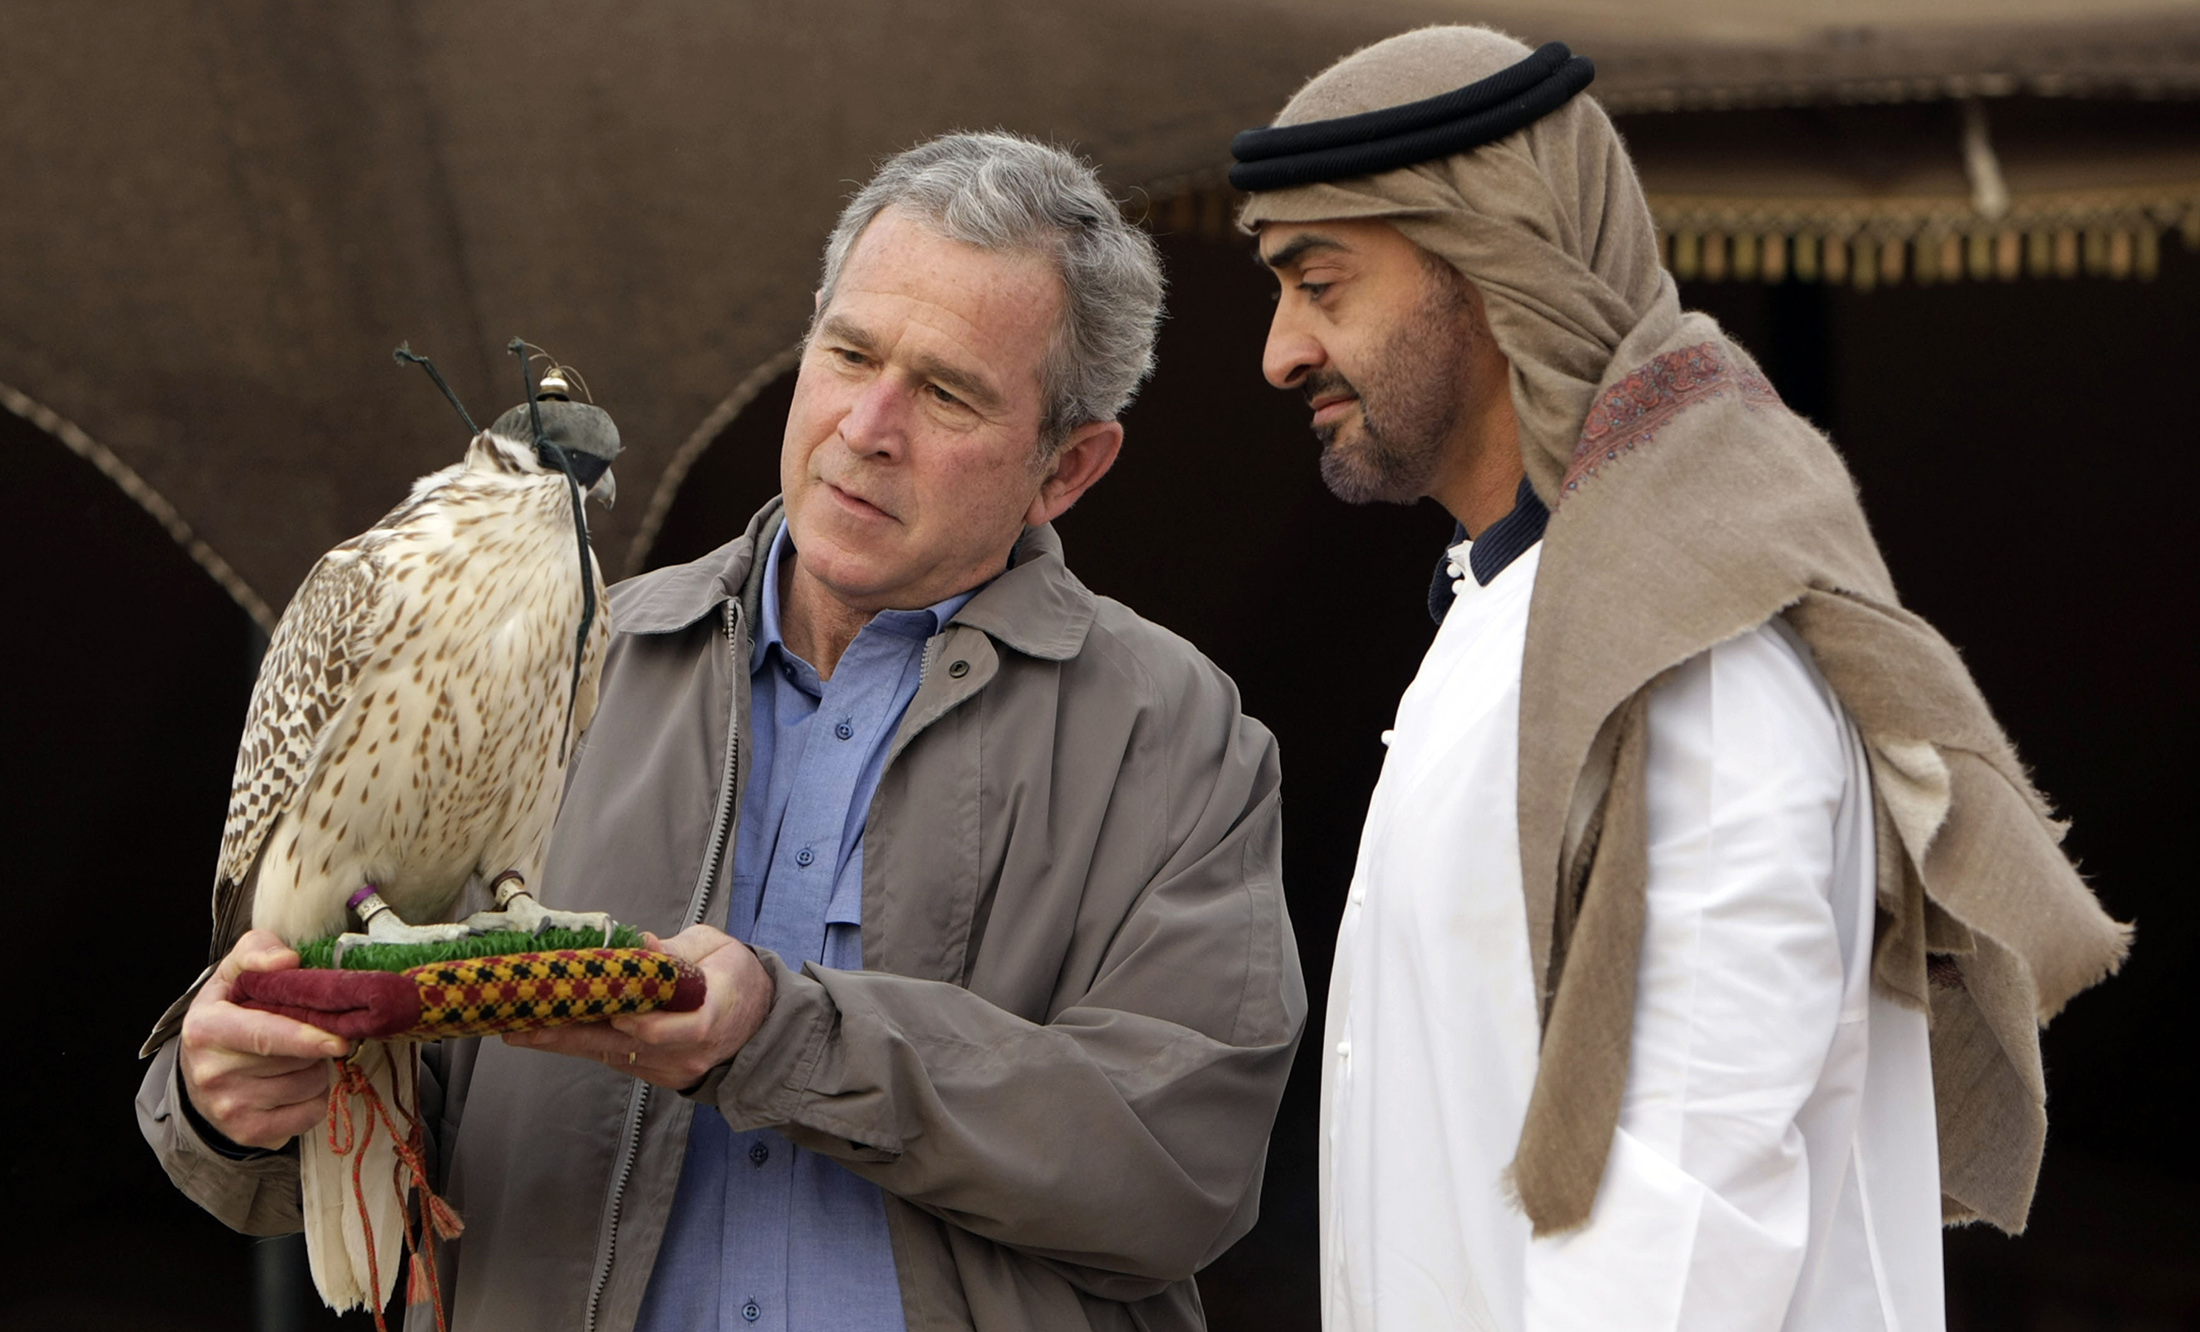 Bush and Sheikh Mohamed